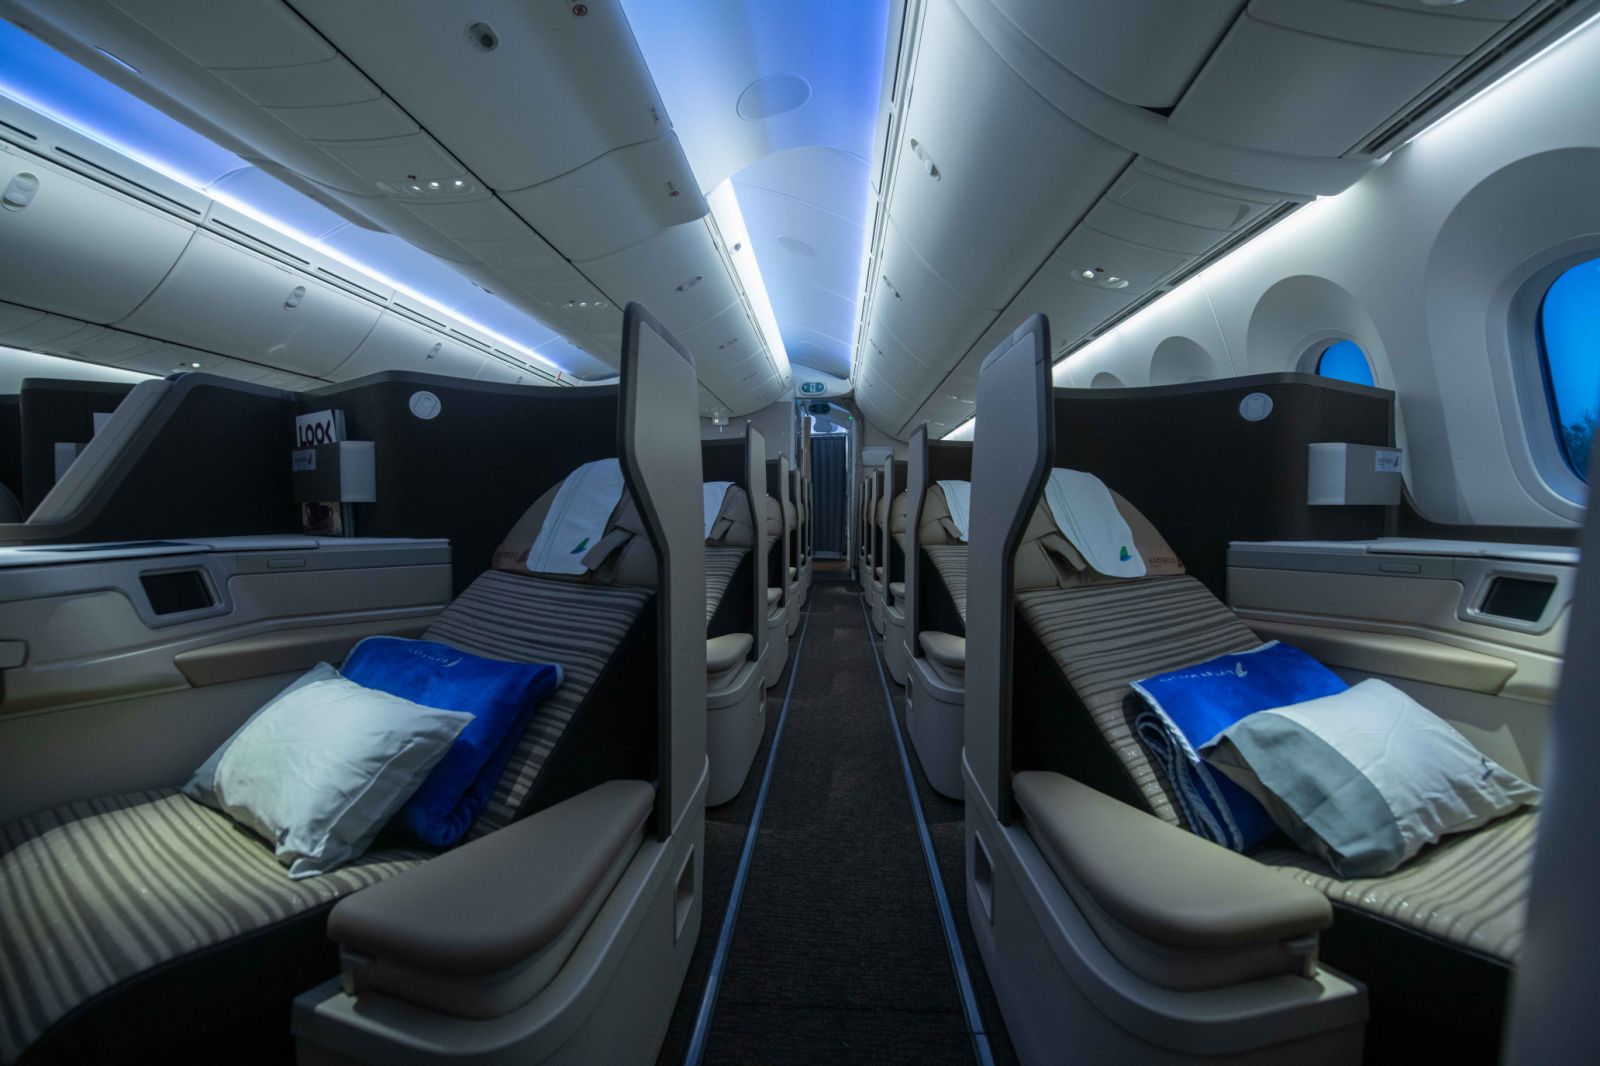 Khoang thương gia sang trọng, hiện đại trong chiếc Boeing 787-9 Dreamliner vừa tiếp nhận của Bamboo Airways